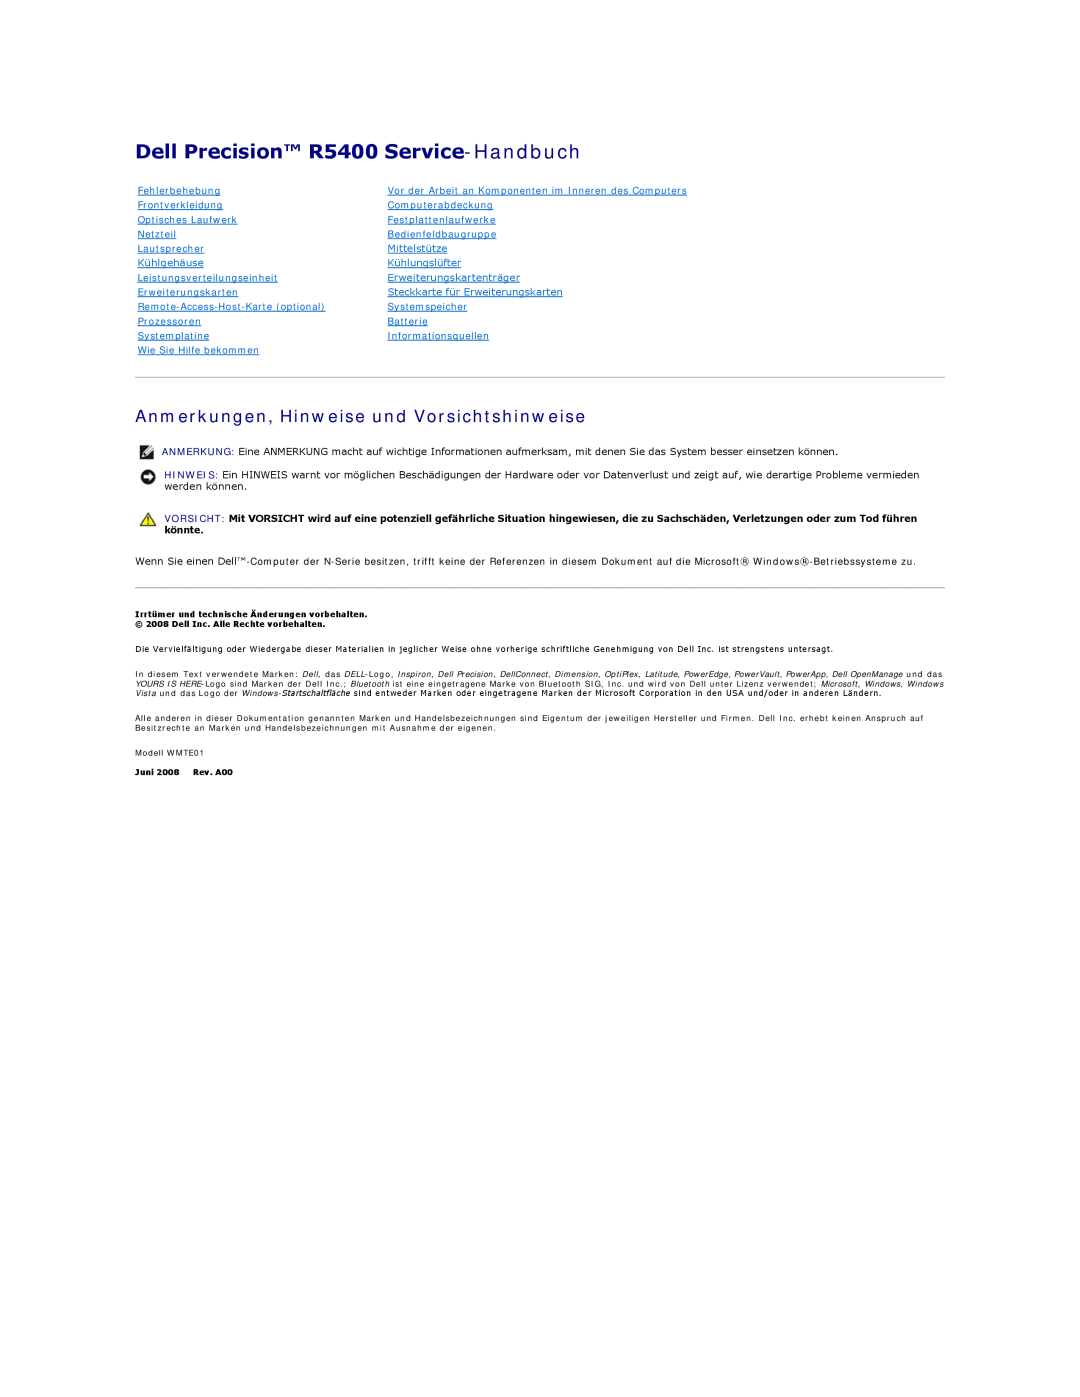 Dell manual Dell Precision R5400 Service-Handbuch, Anmerkungen, Hinweise und Vorsichtshinweise, Fehlerbehebung 